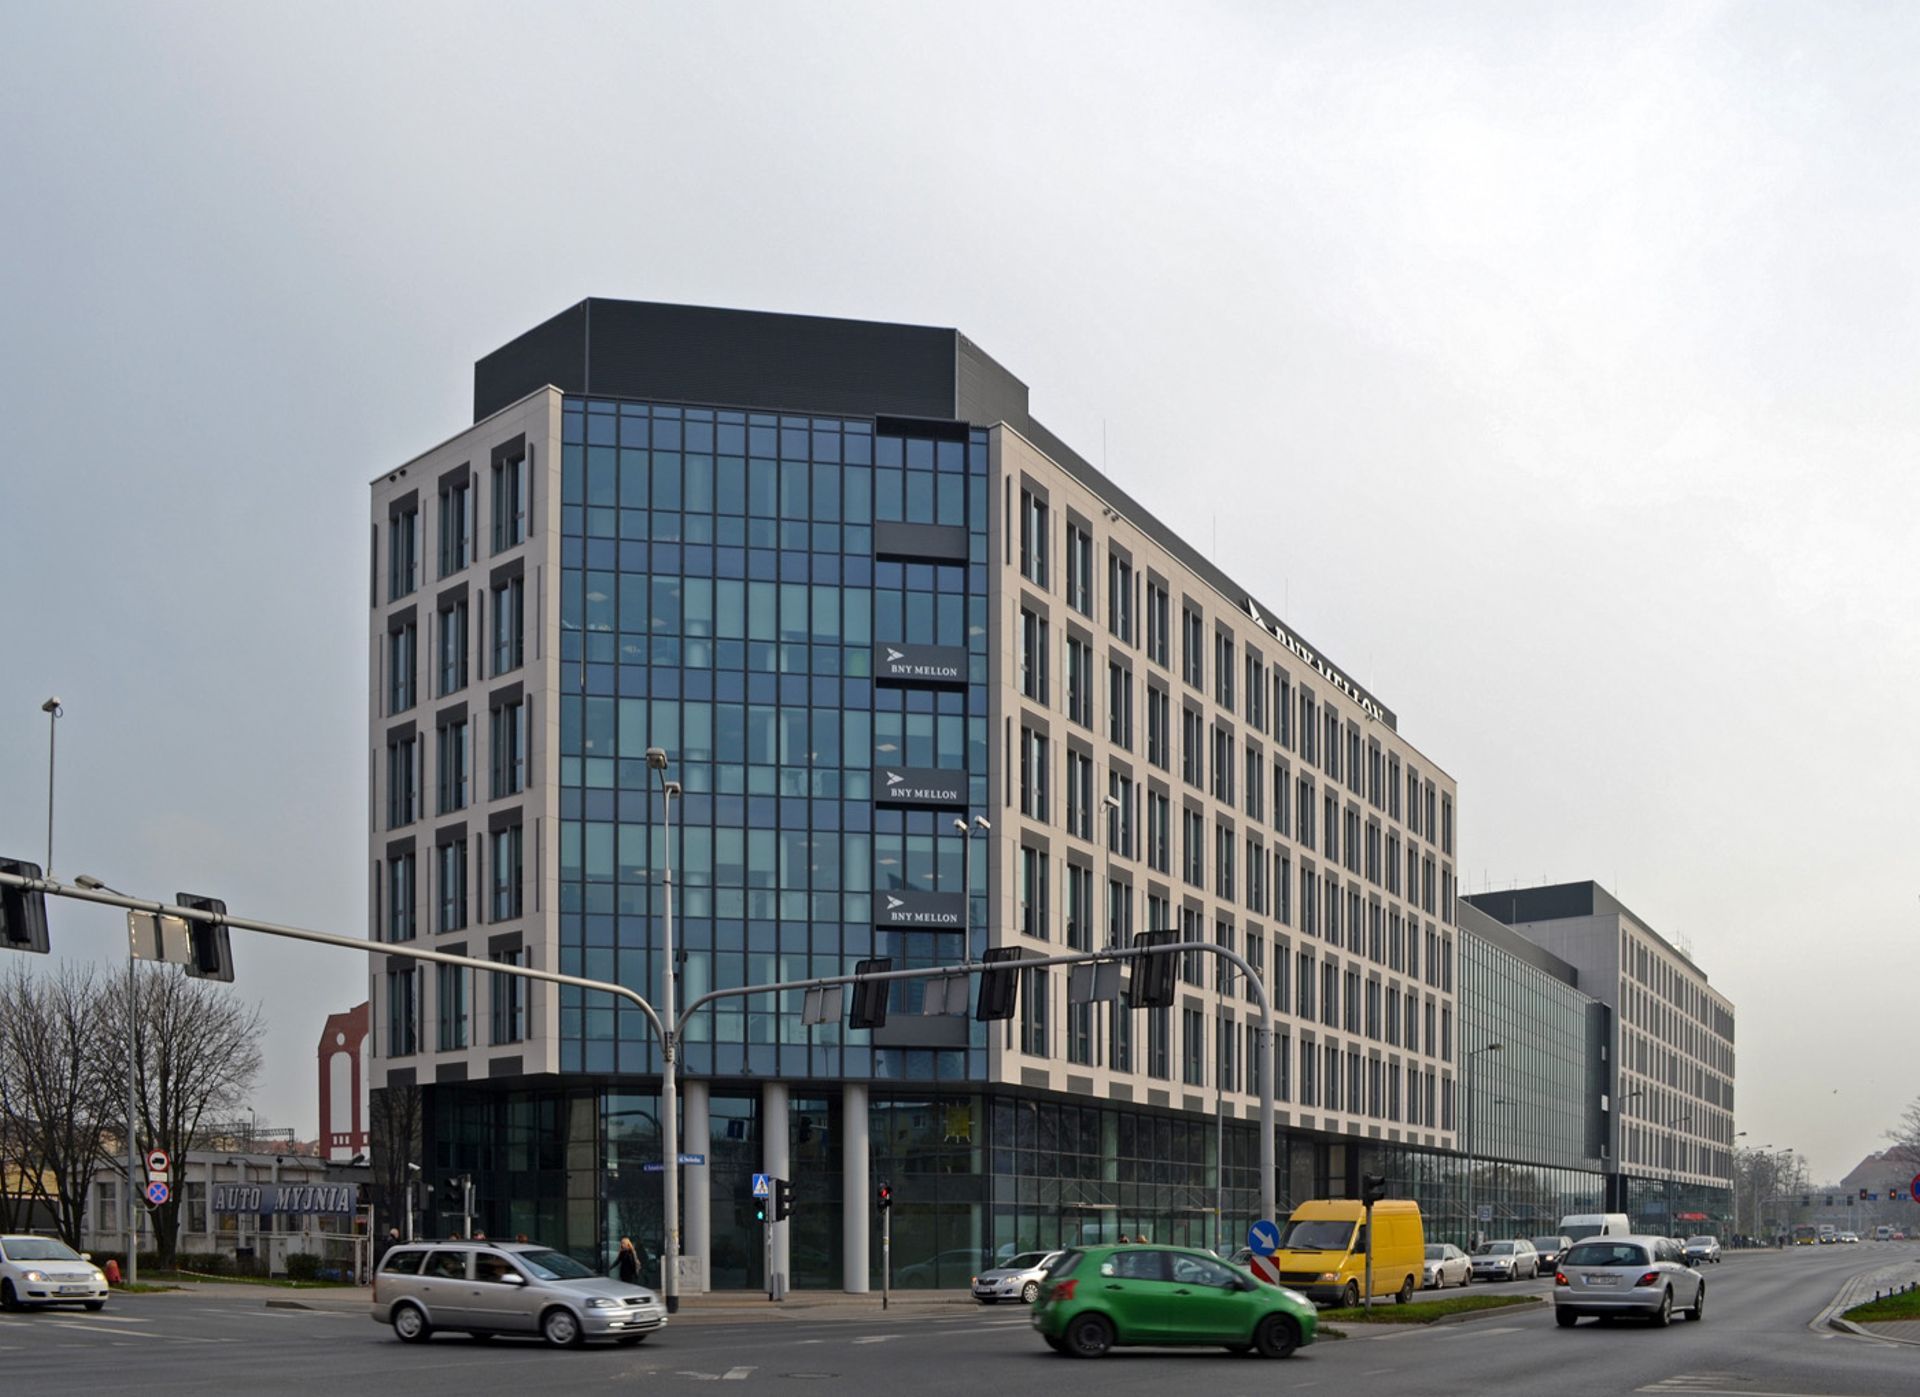  OVH wynajmuje powierzchnię biurową w Aquarius Business House we Wrocławiu